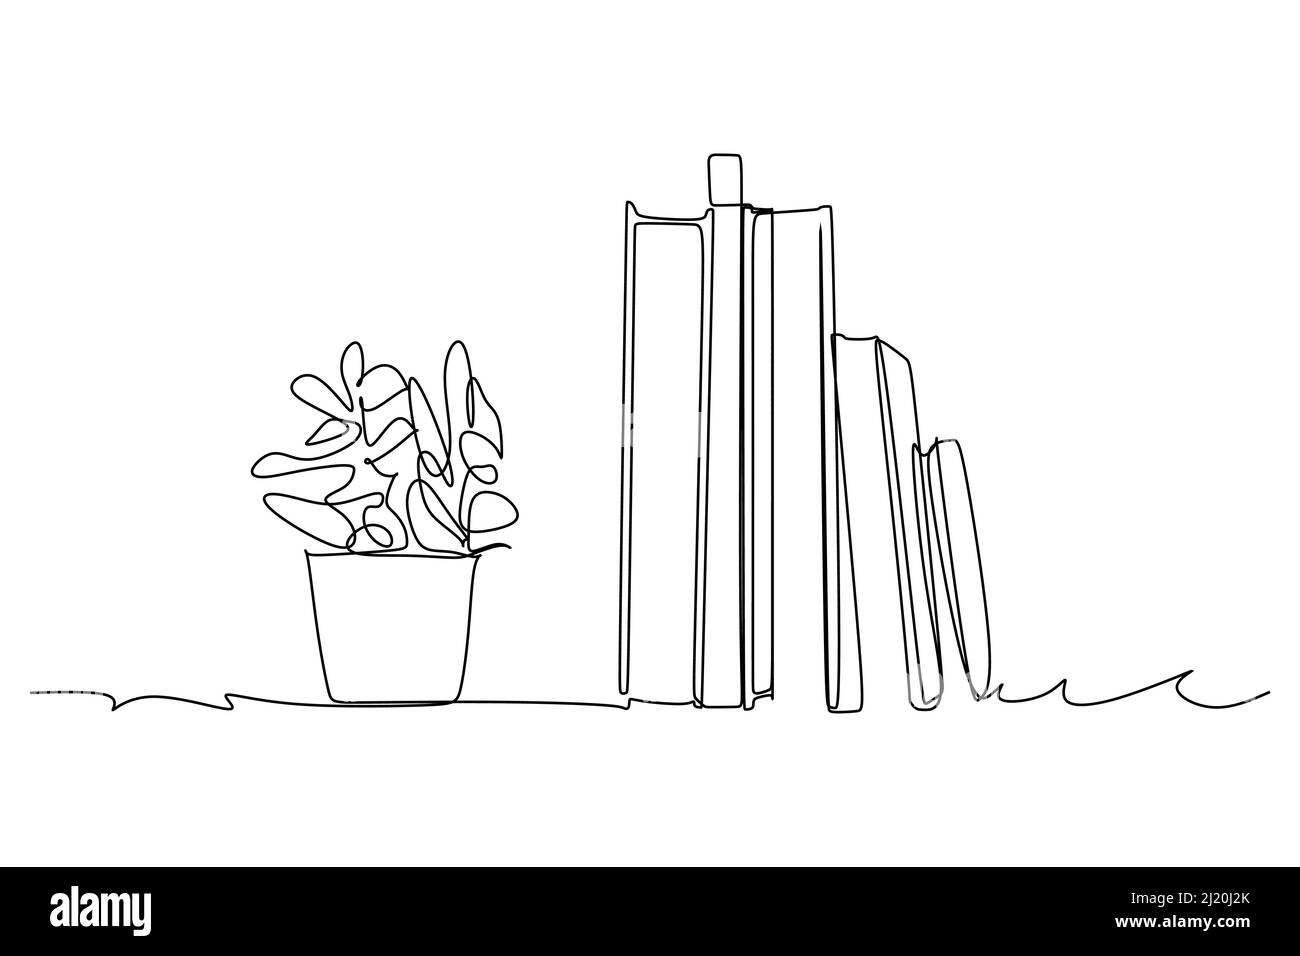 Kontinuierliche Einzelzeilenzeichnung und Anlage auf dem Tisch. Linienkunst Zeichnung mit abstrakter Form. Pflanzen Art Design für Print, Cover, Tapete Stock Vektor